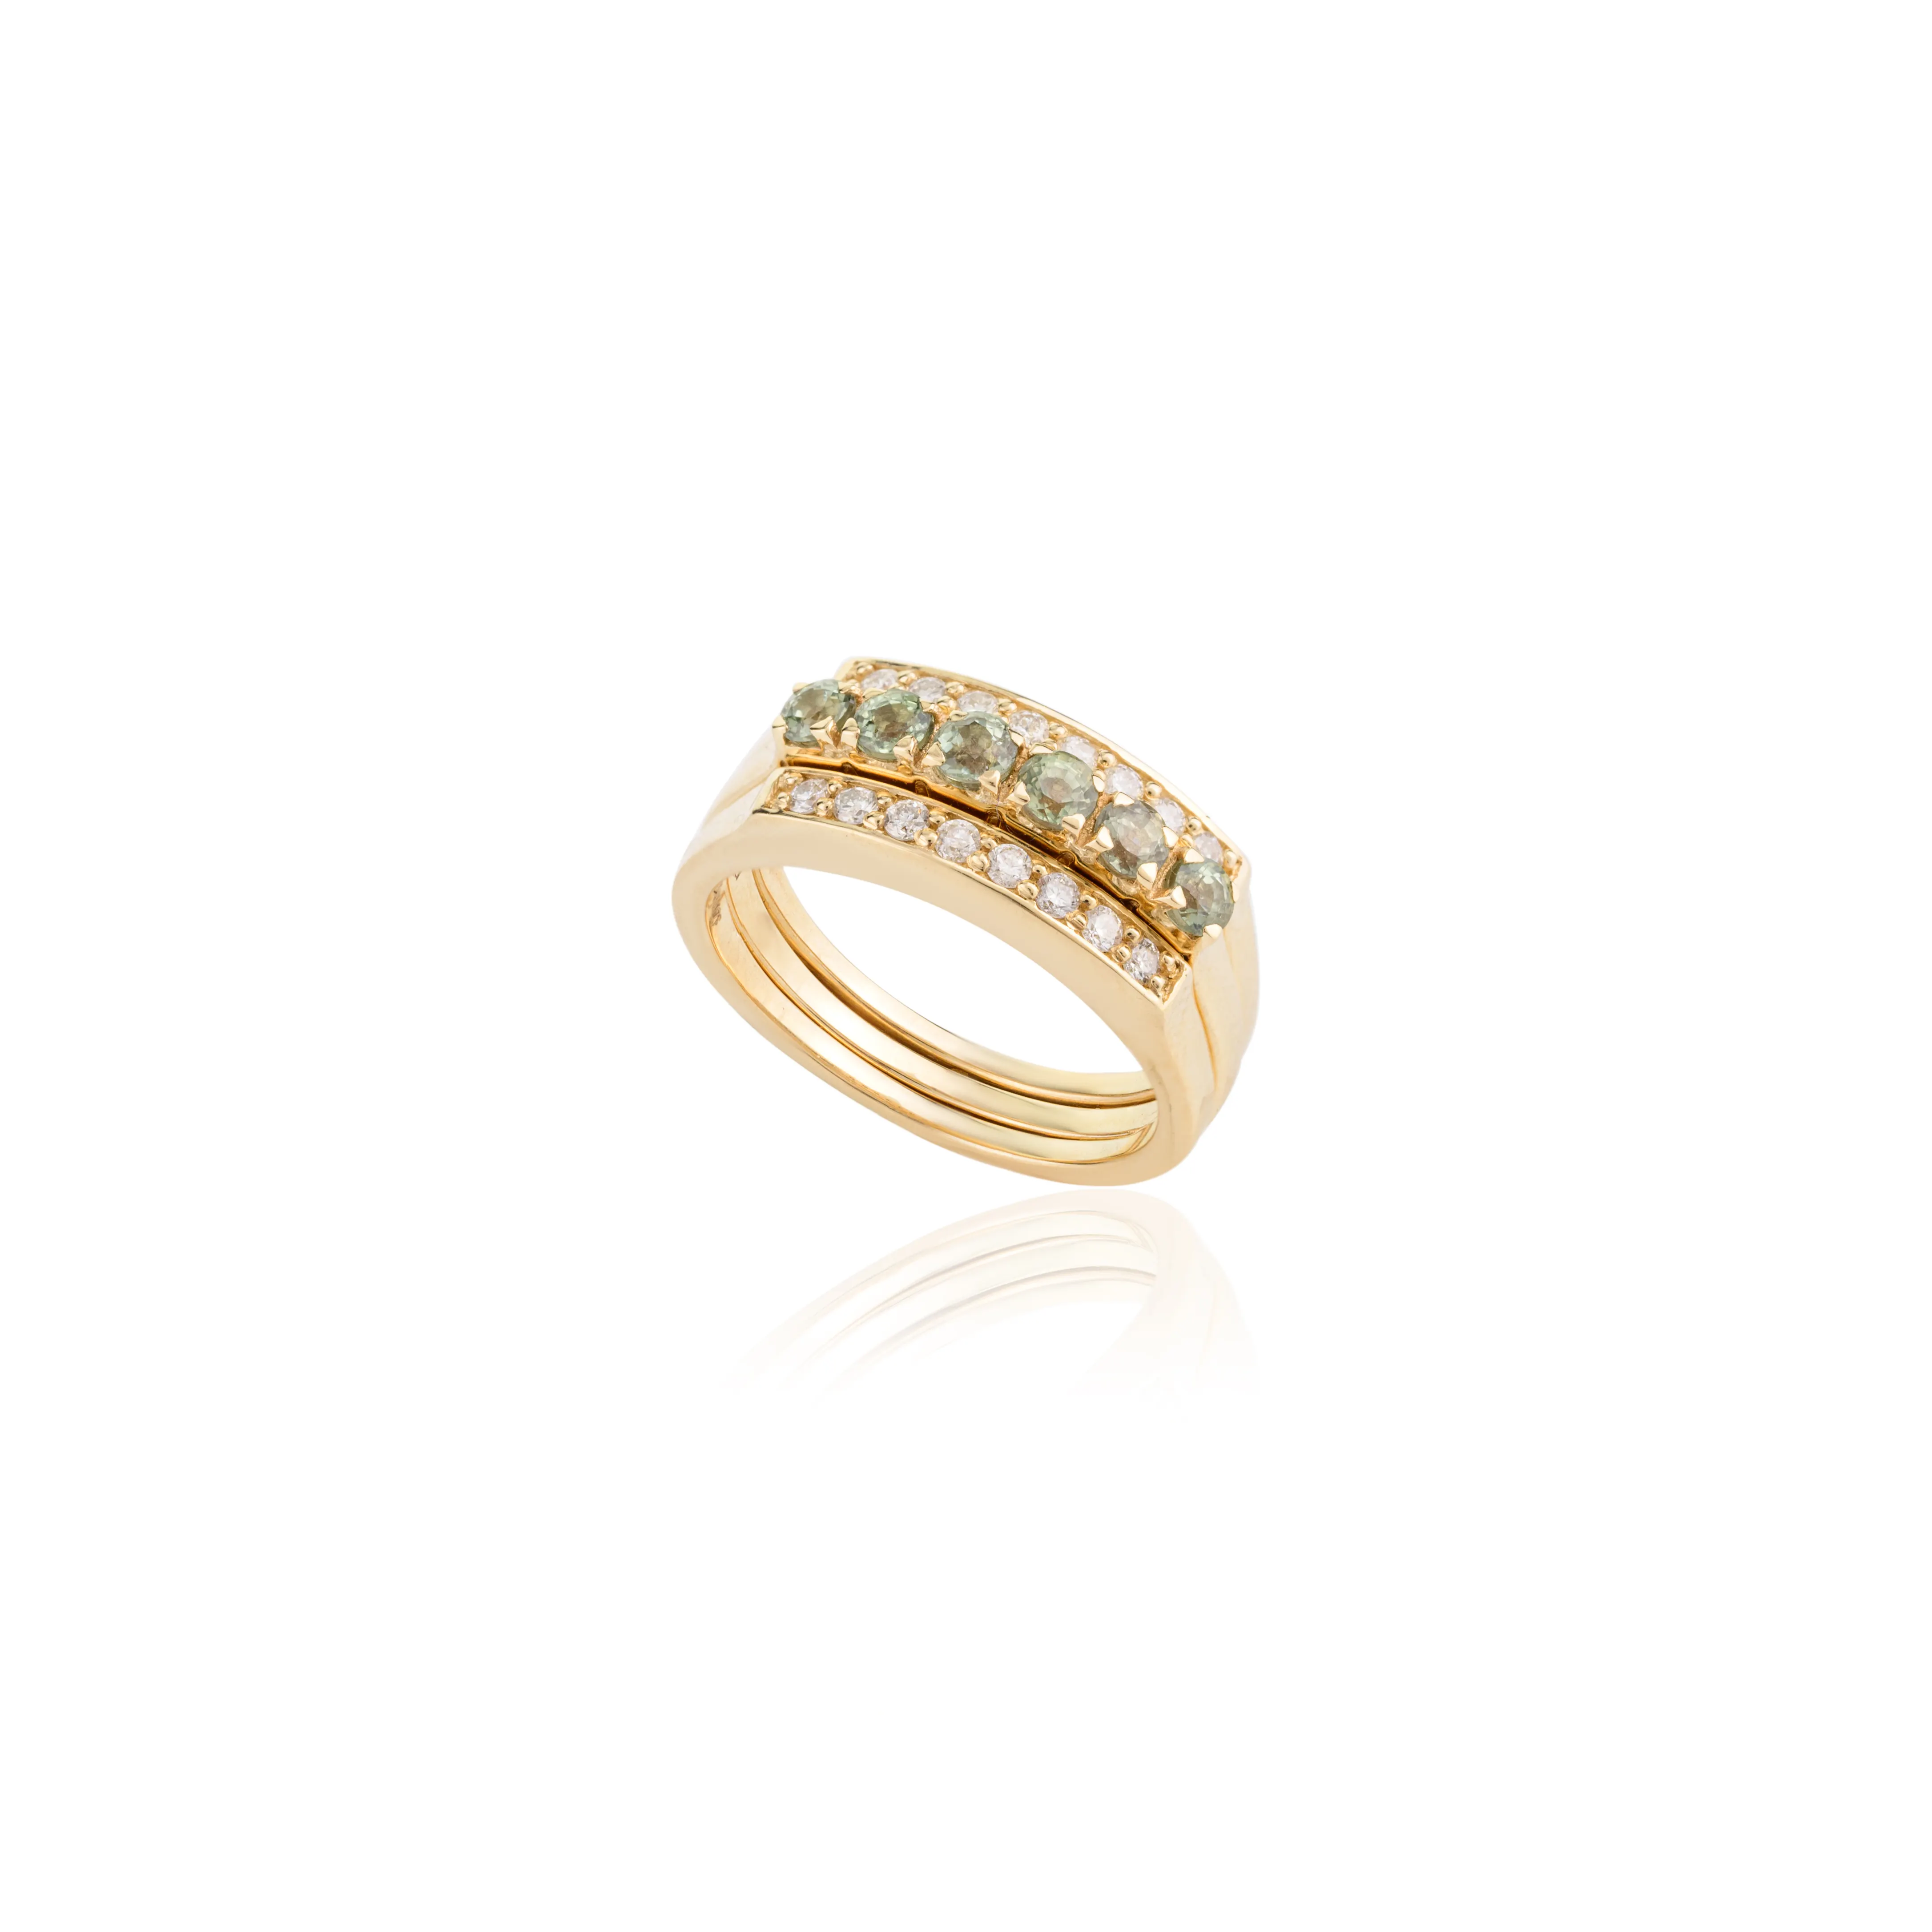 Anel de luxo com safira verde 100% natural e anel de ouro 14K para presente, joia de ouro amarelo maciço com remoção de diamantes, coleção de tendências